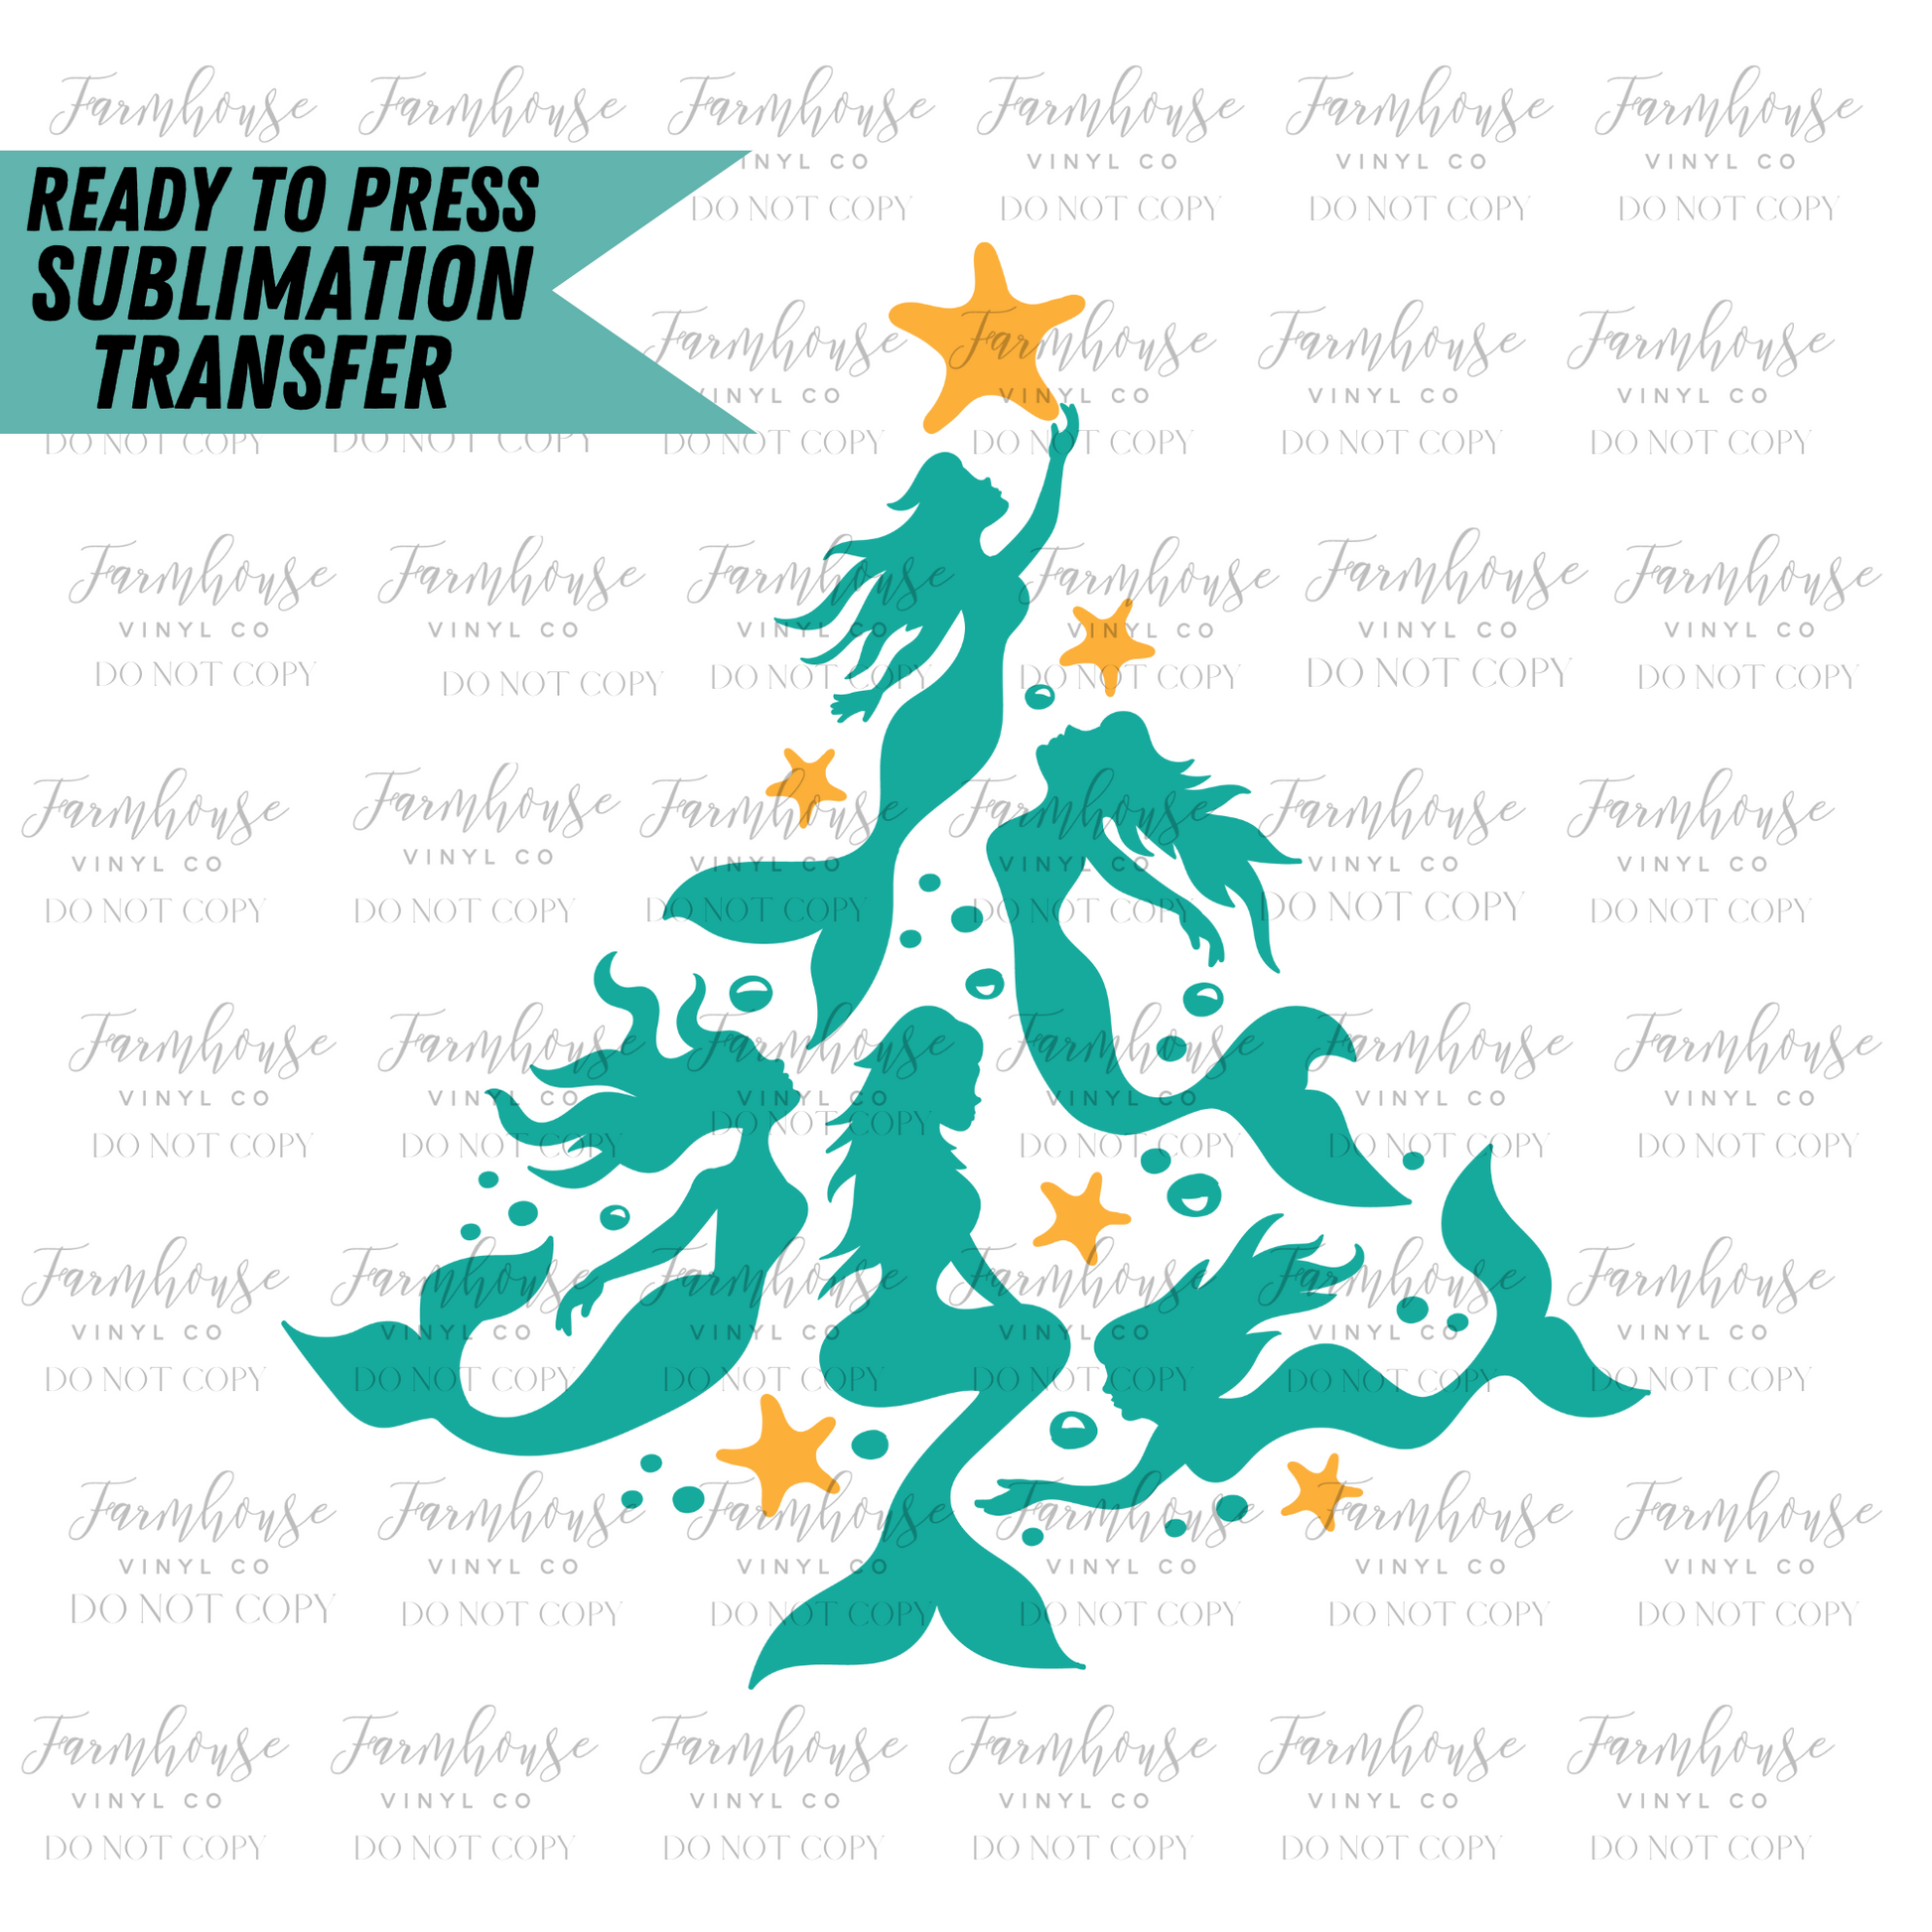 Mermaid Christmas Tree Ready To Press Sublimation Transfer - Farmhouse Vinyl Co